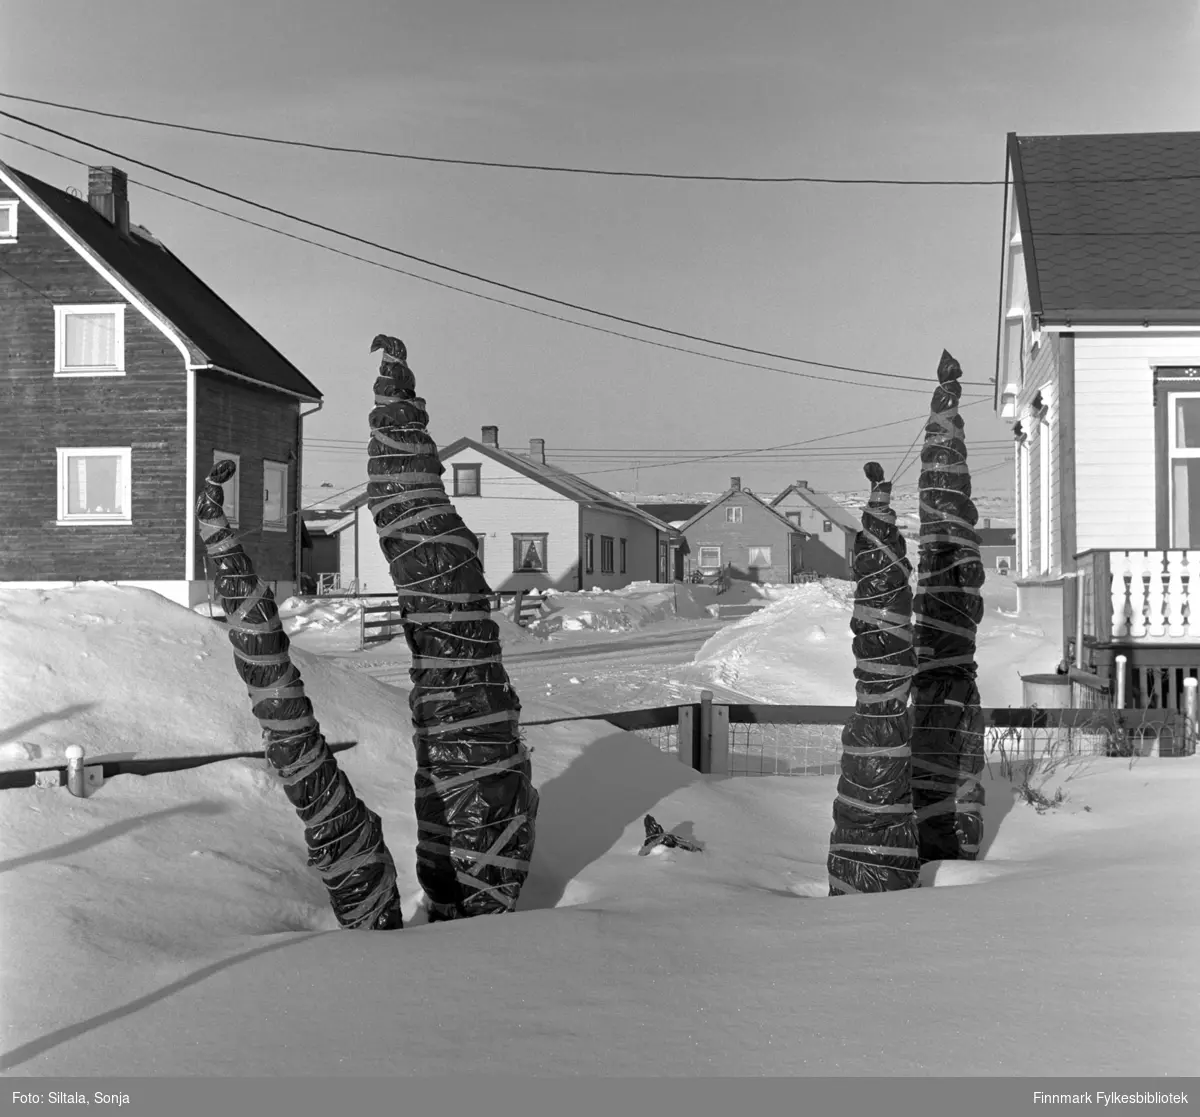 På tunet til Kåre Roald Nilsen i Salttjern sårbare vekstene er pakket inn mot den harde vinteren. Tidspunktet er mars i 2002.